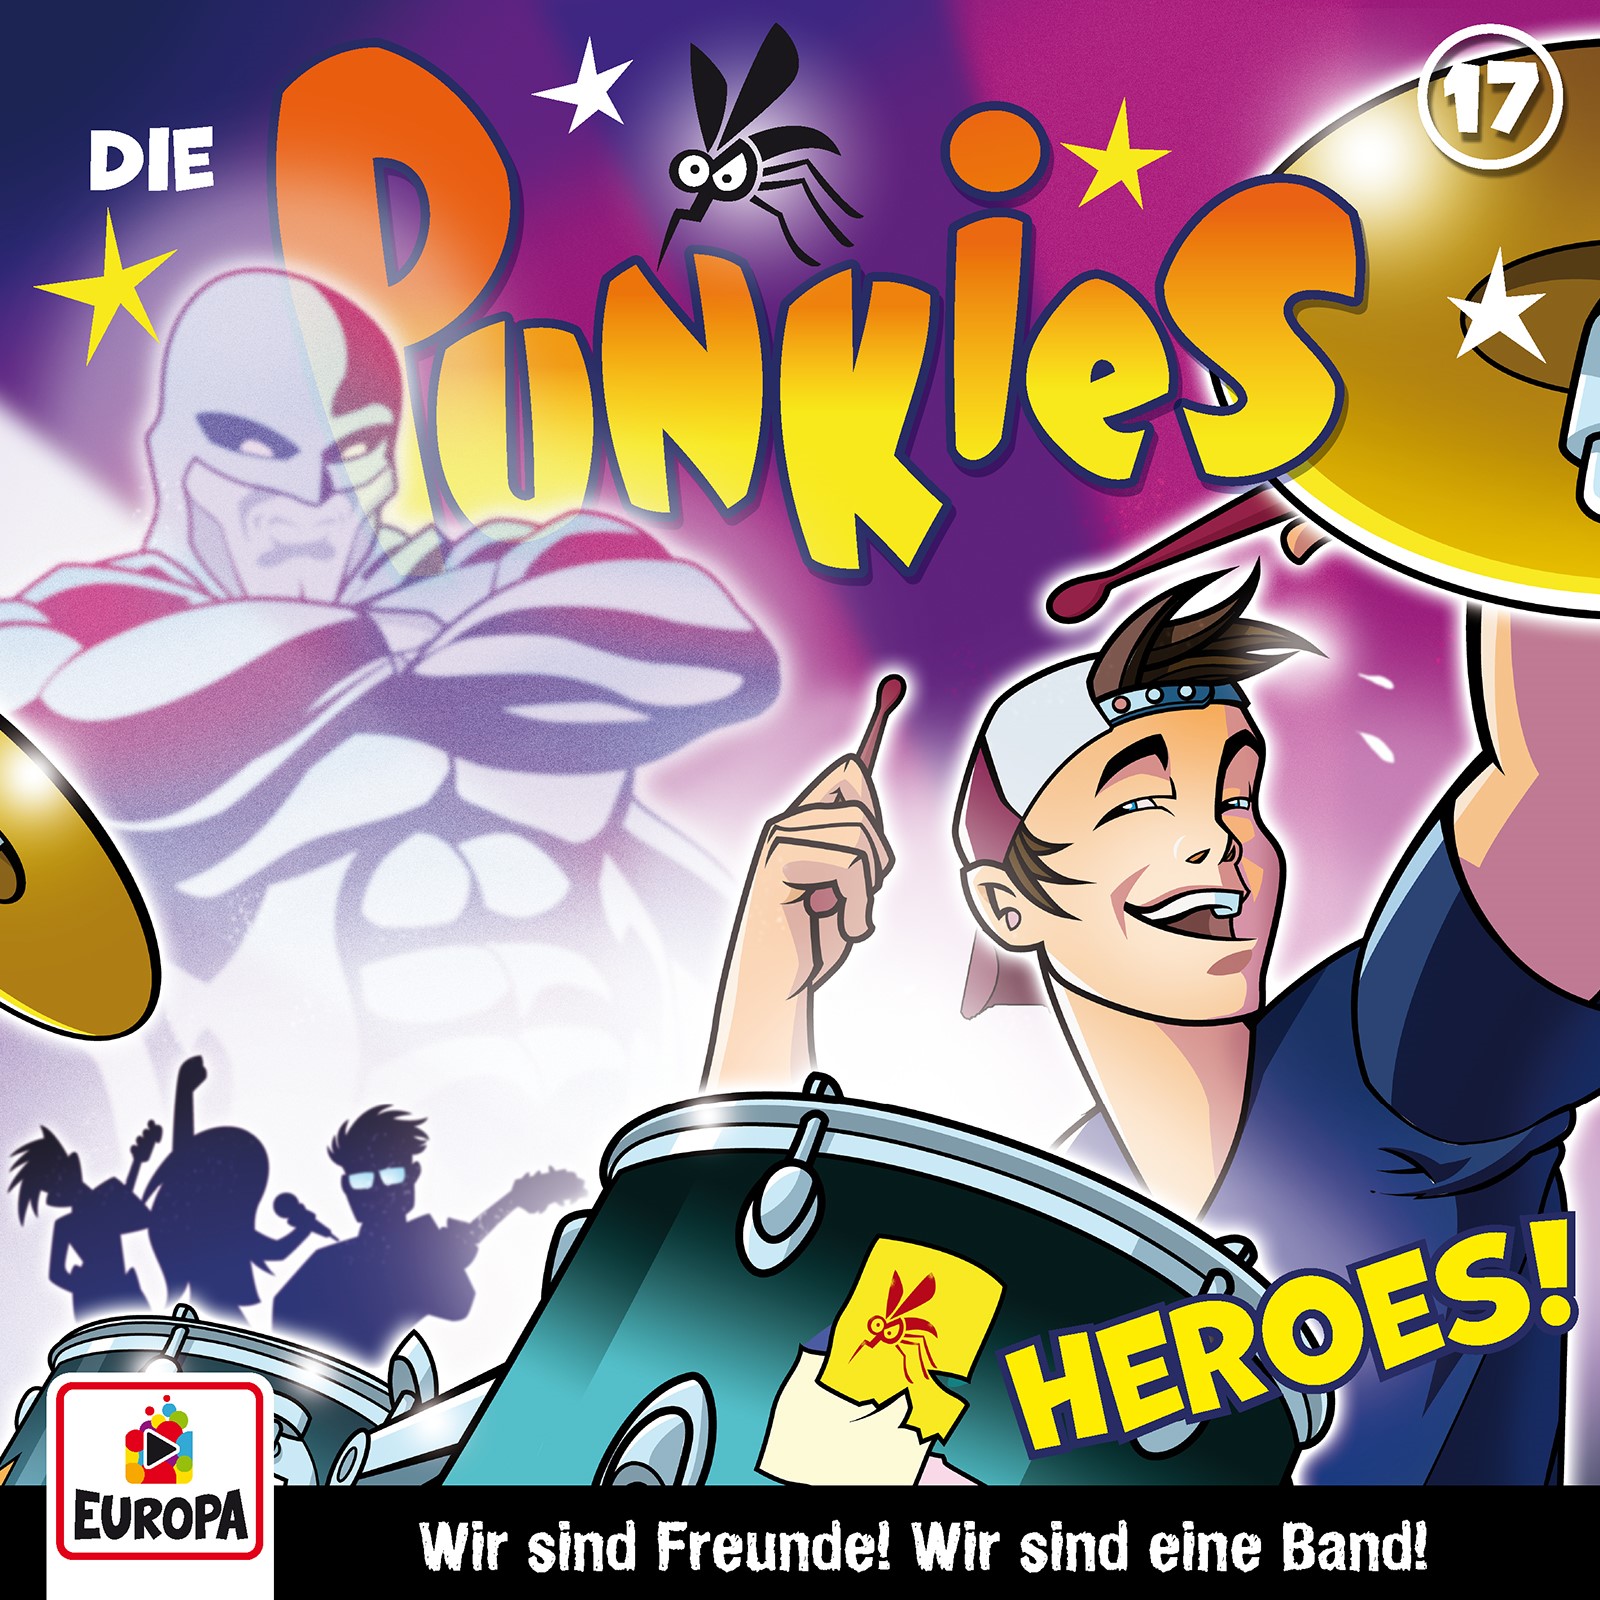 Die Punkies  - Heroes!